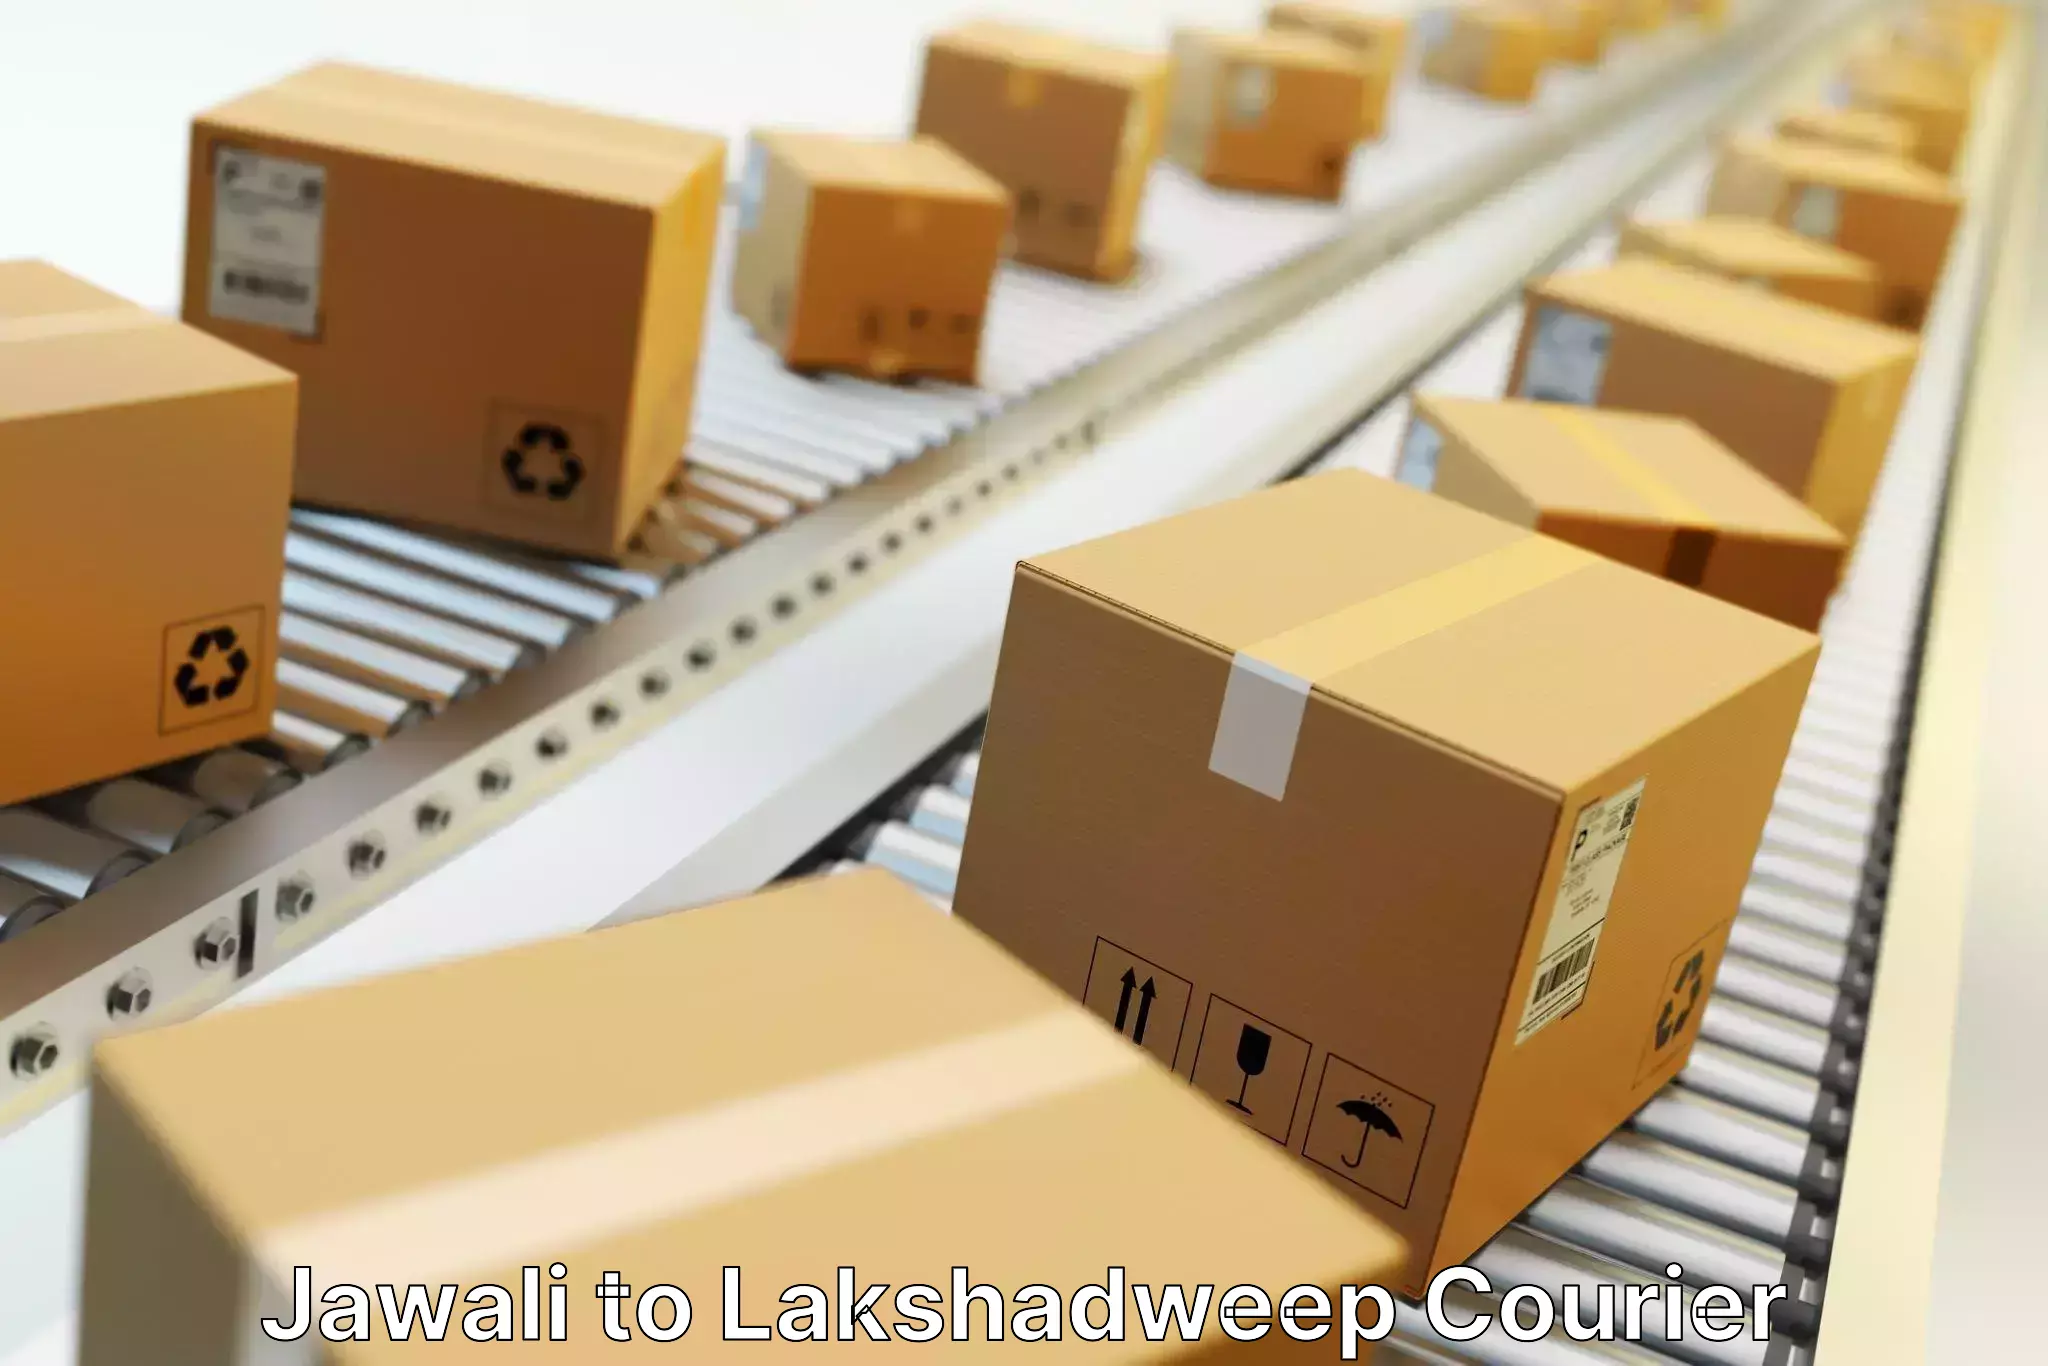 High-capacity shipping options Jawali to Lakshadweep